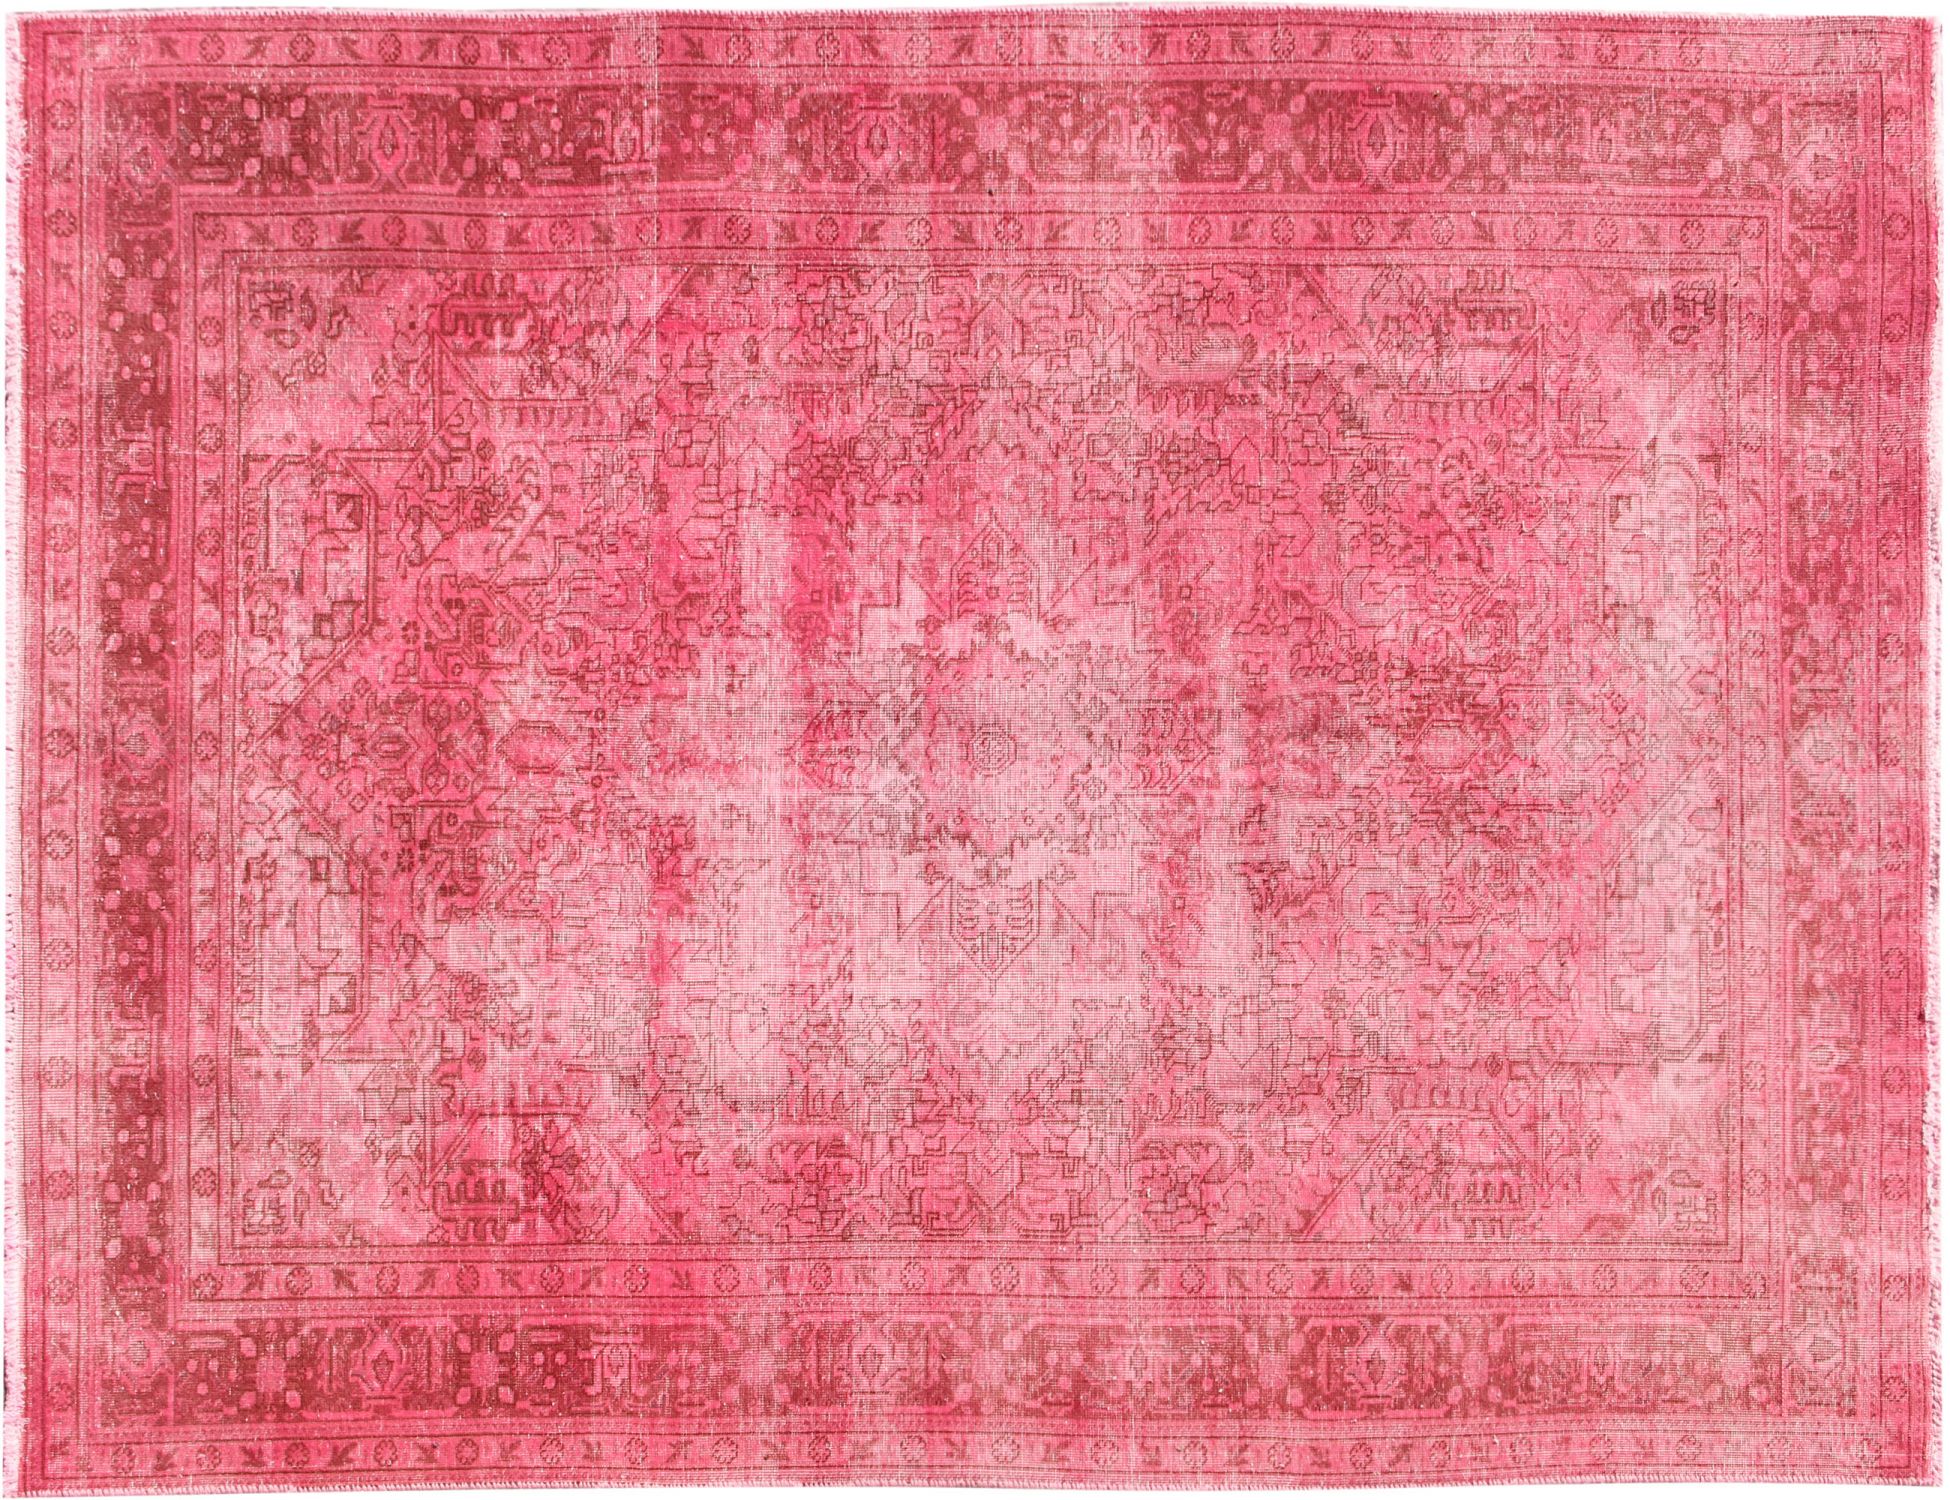 Persischer Vintage Teppich  rosa <br/>295 x 200 cm